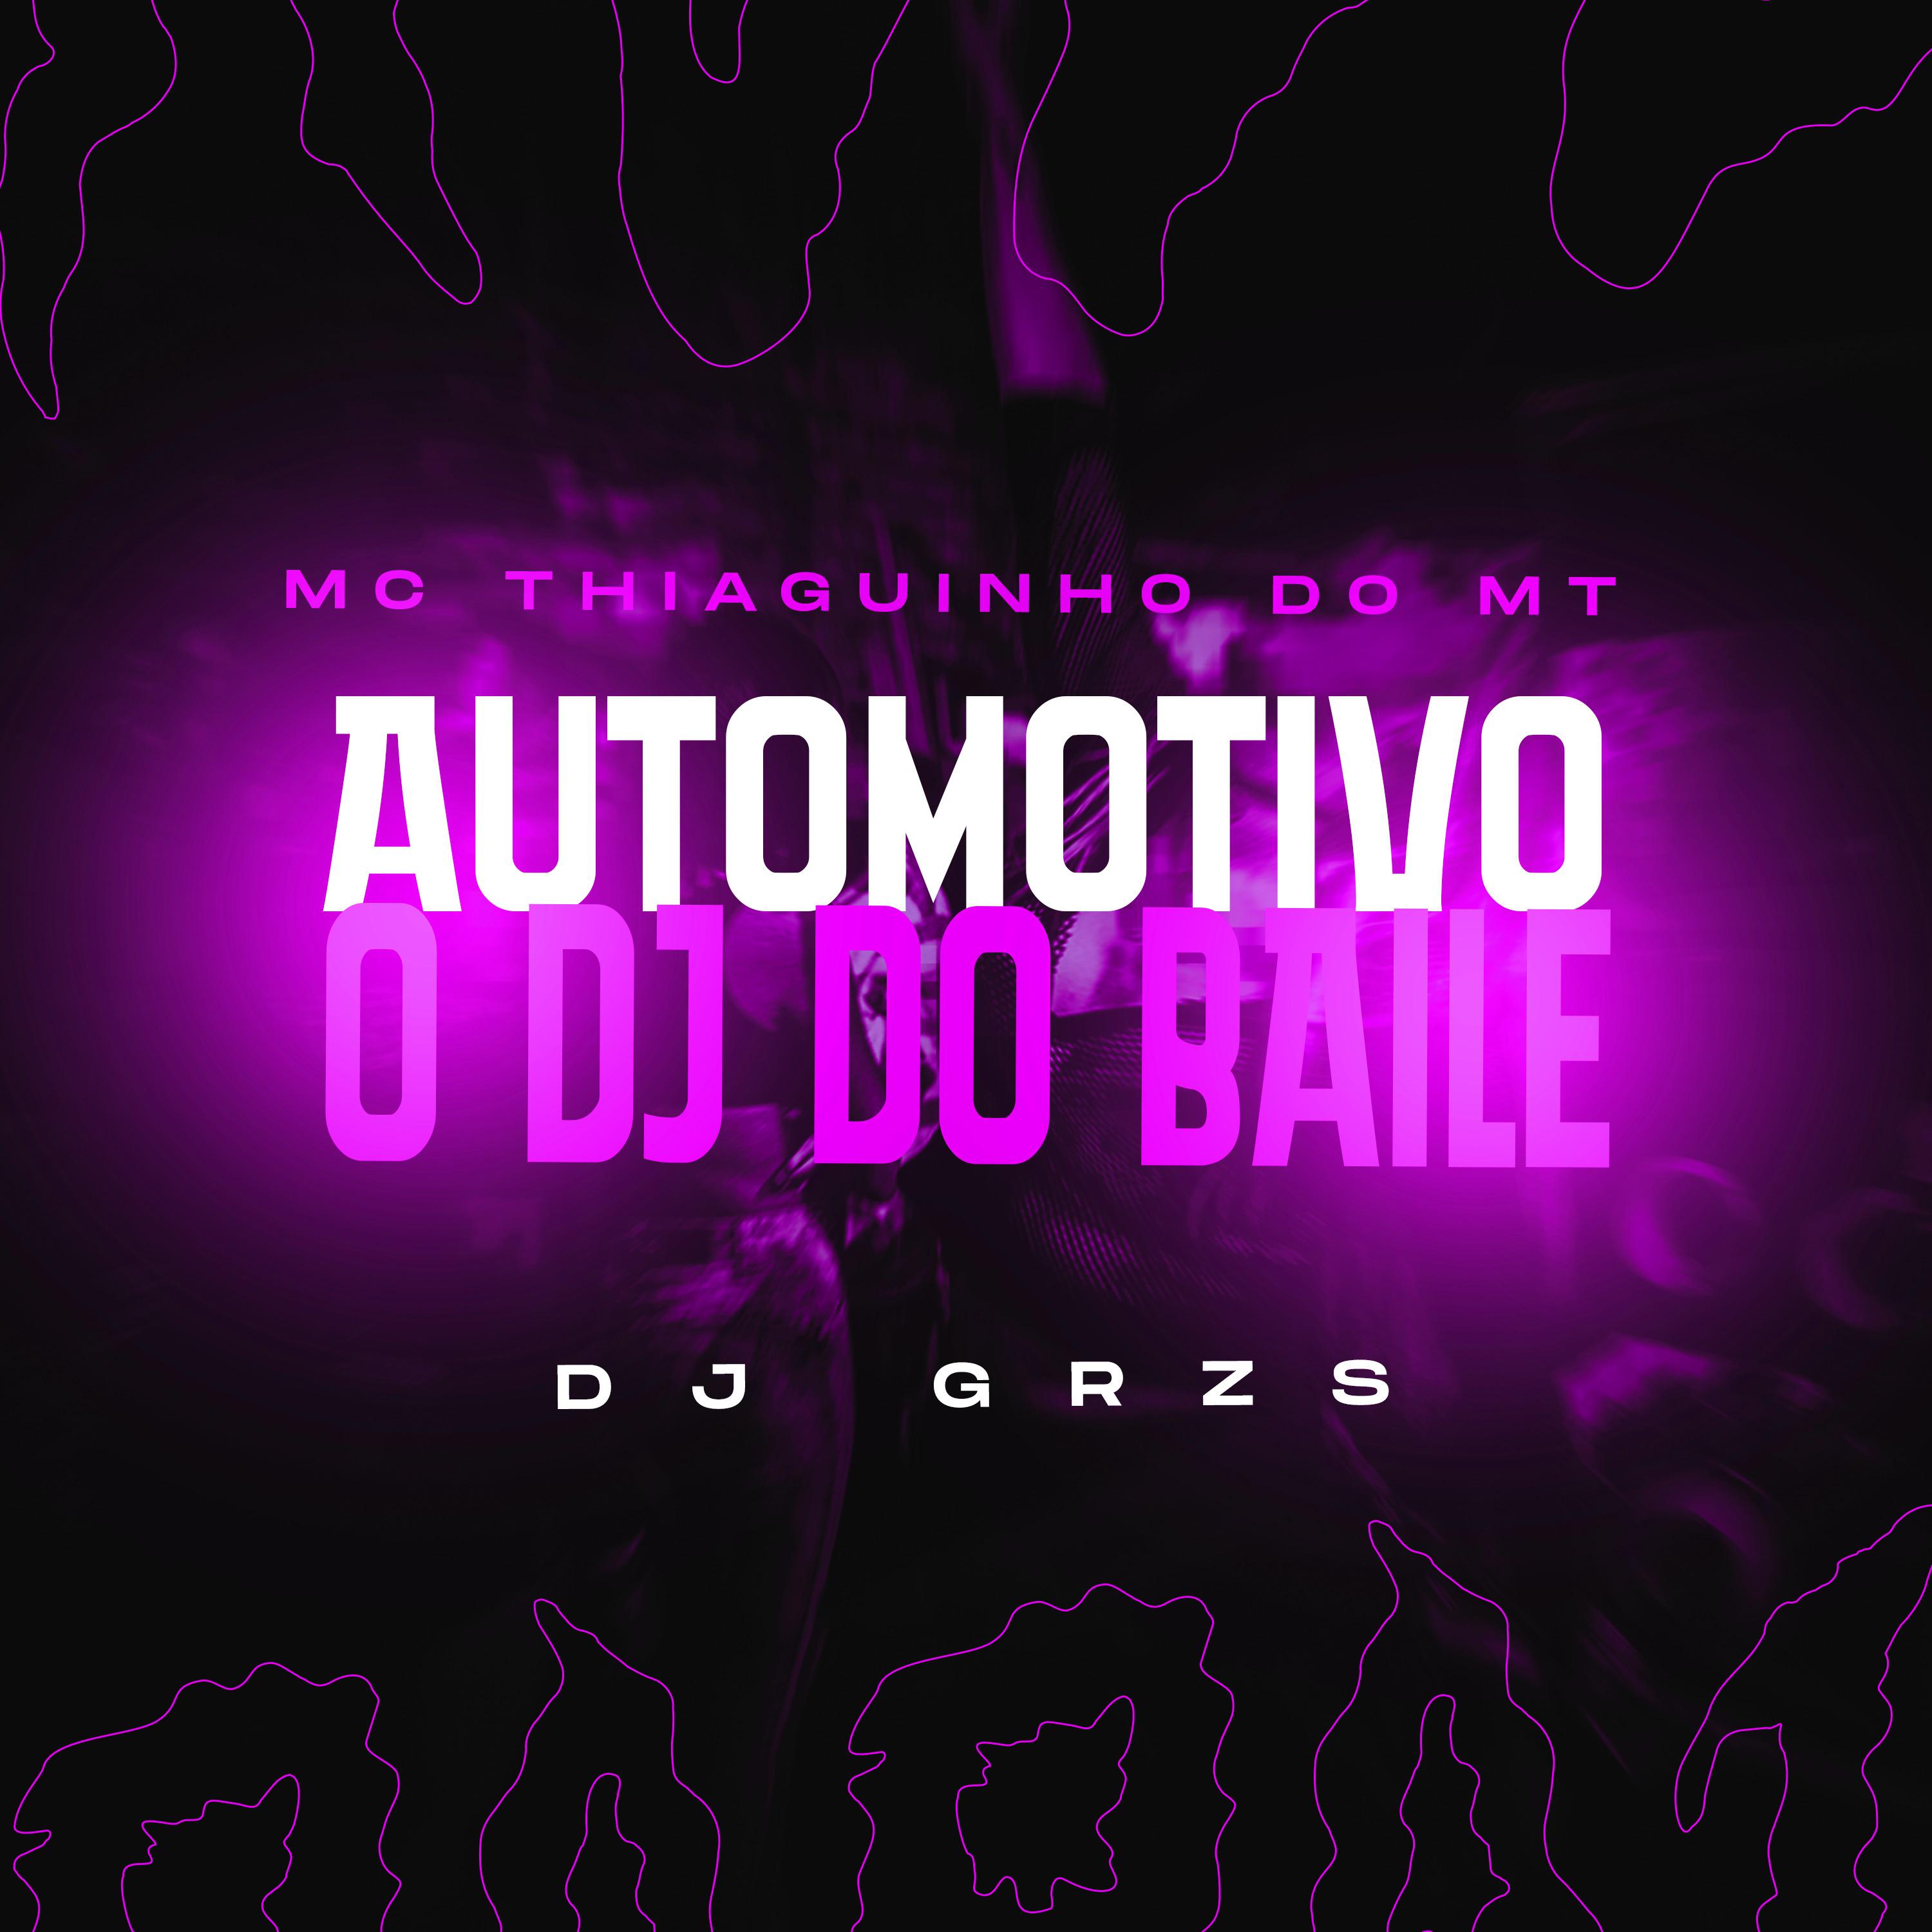 DJ GRZS - Automotivo o Dj do Baile